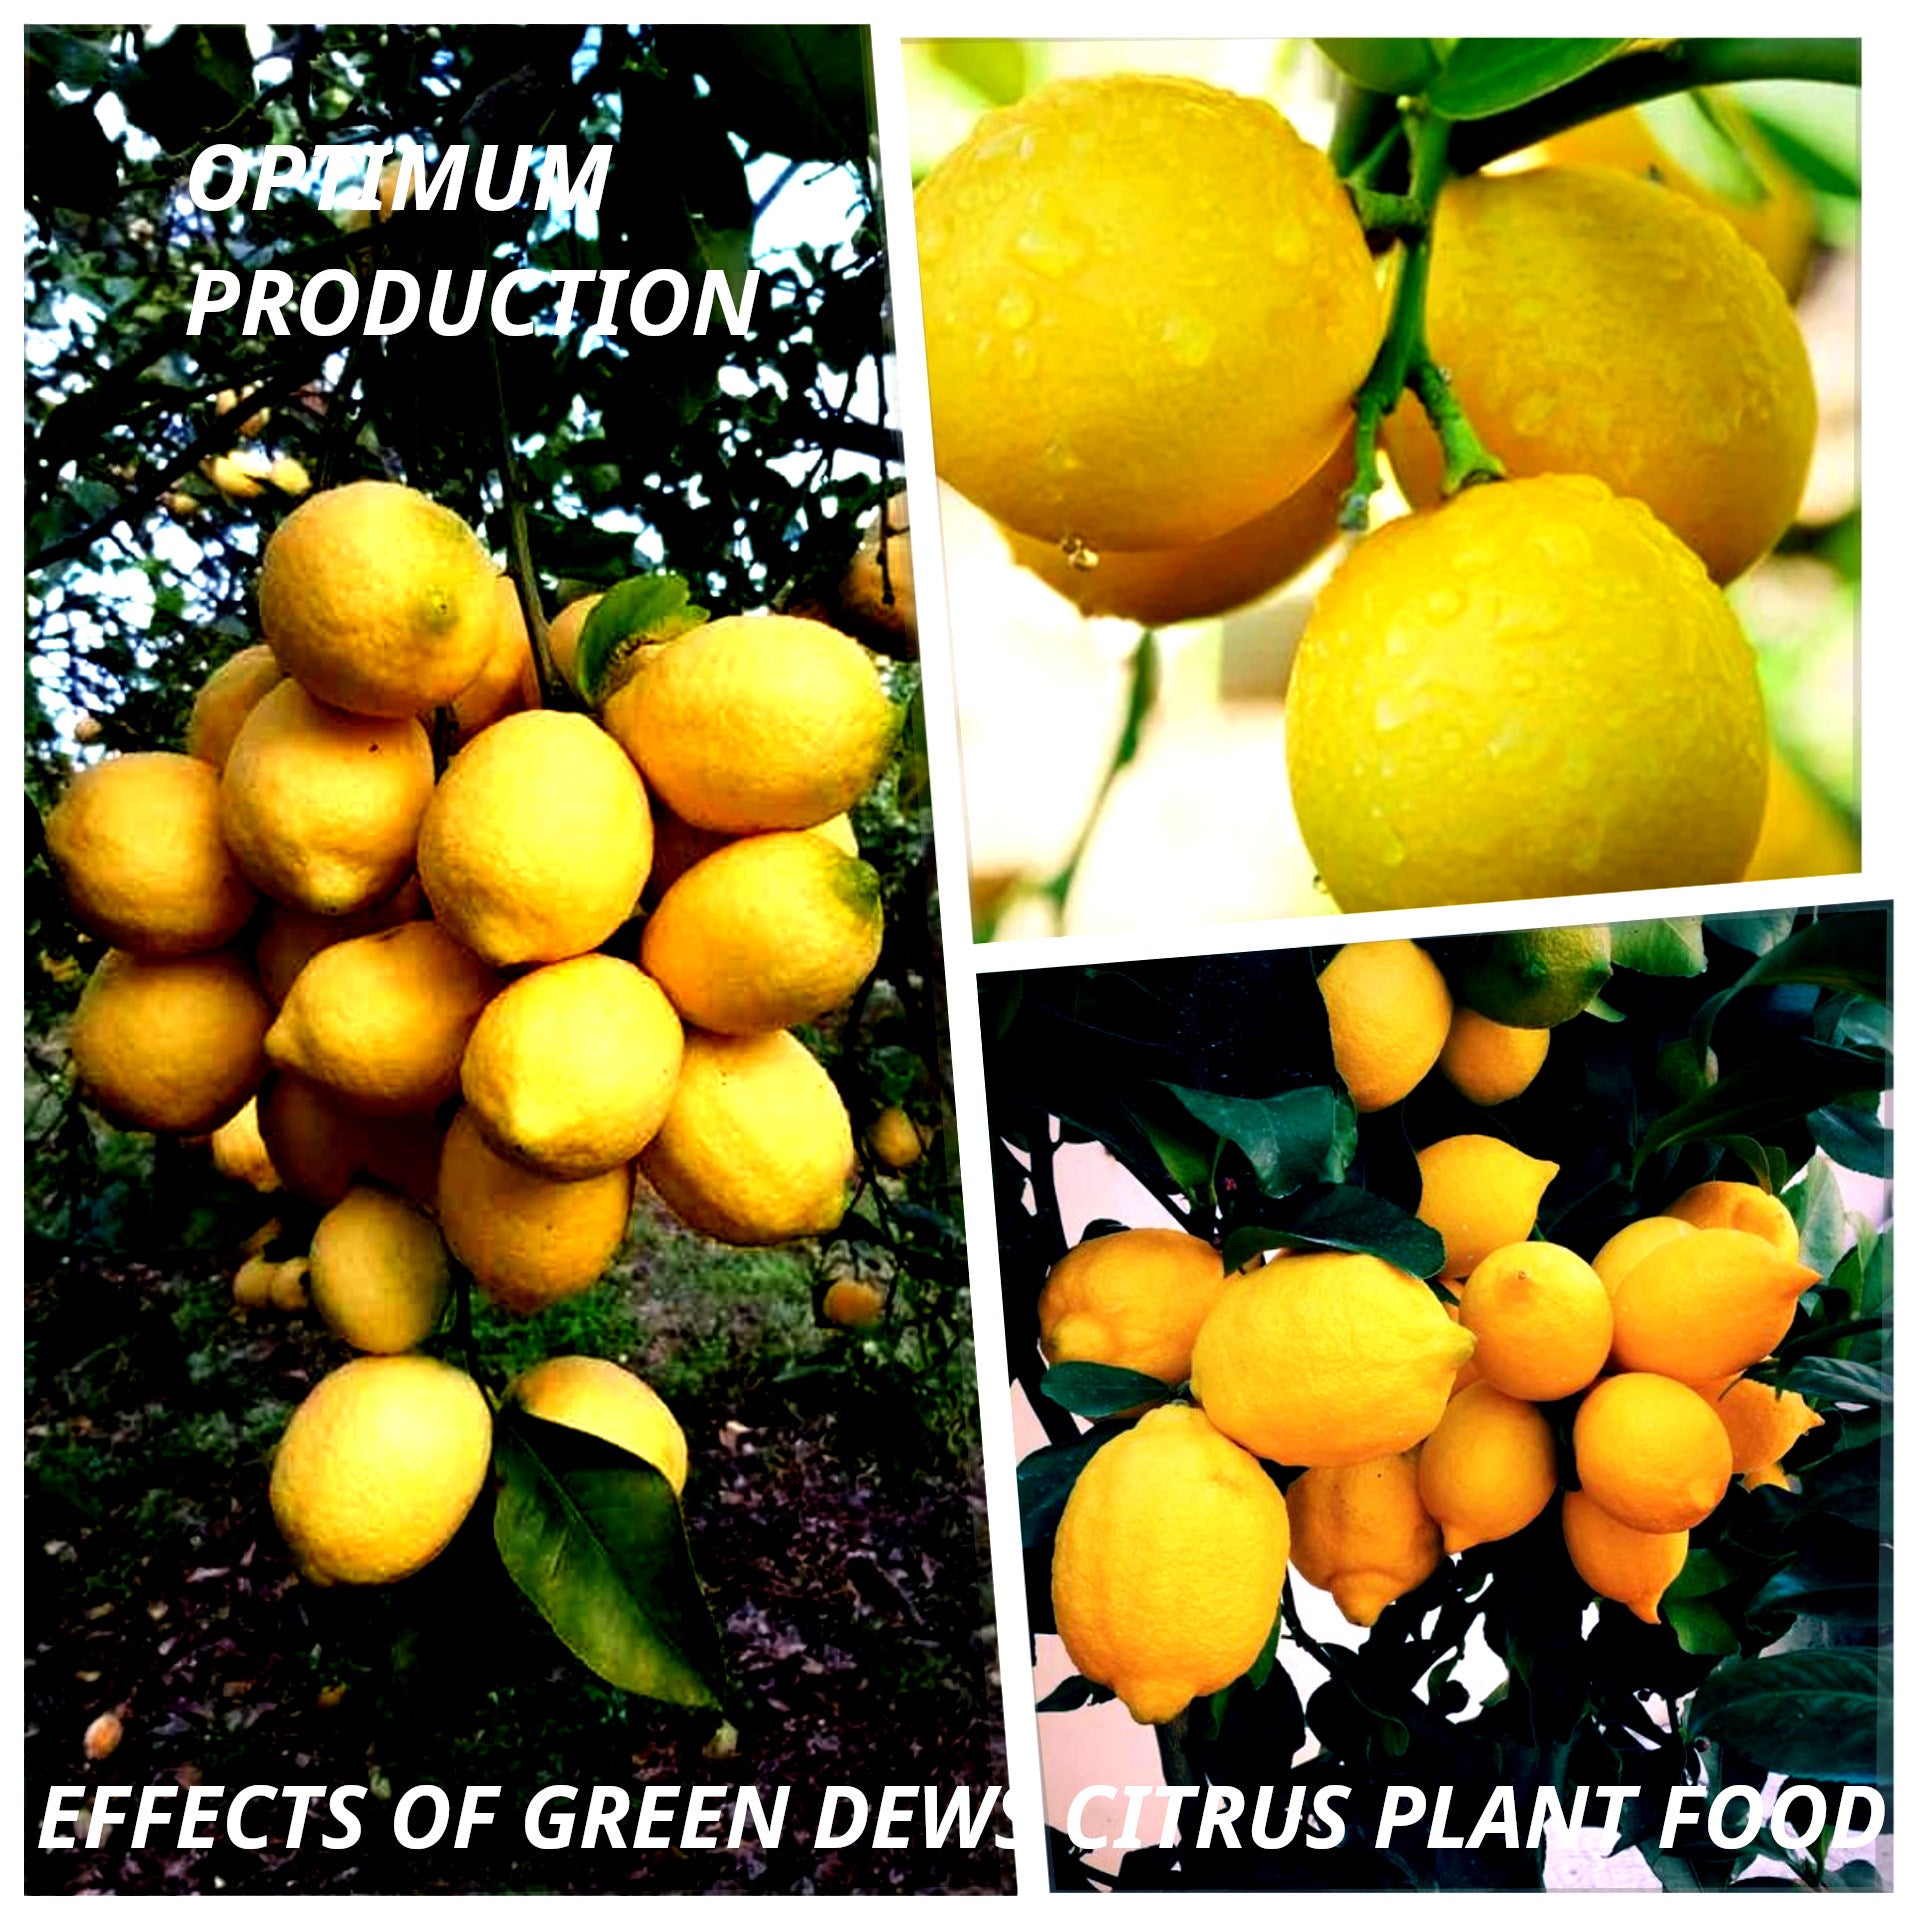 Green Dews Citrus plant fertilizer liquid for lemon plants oranges grape fruits - hfnl!fe